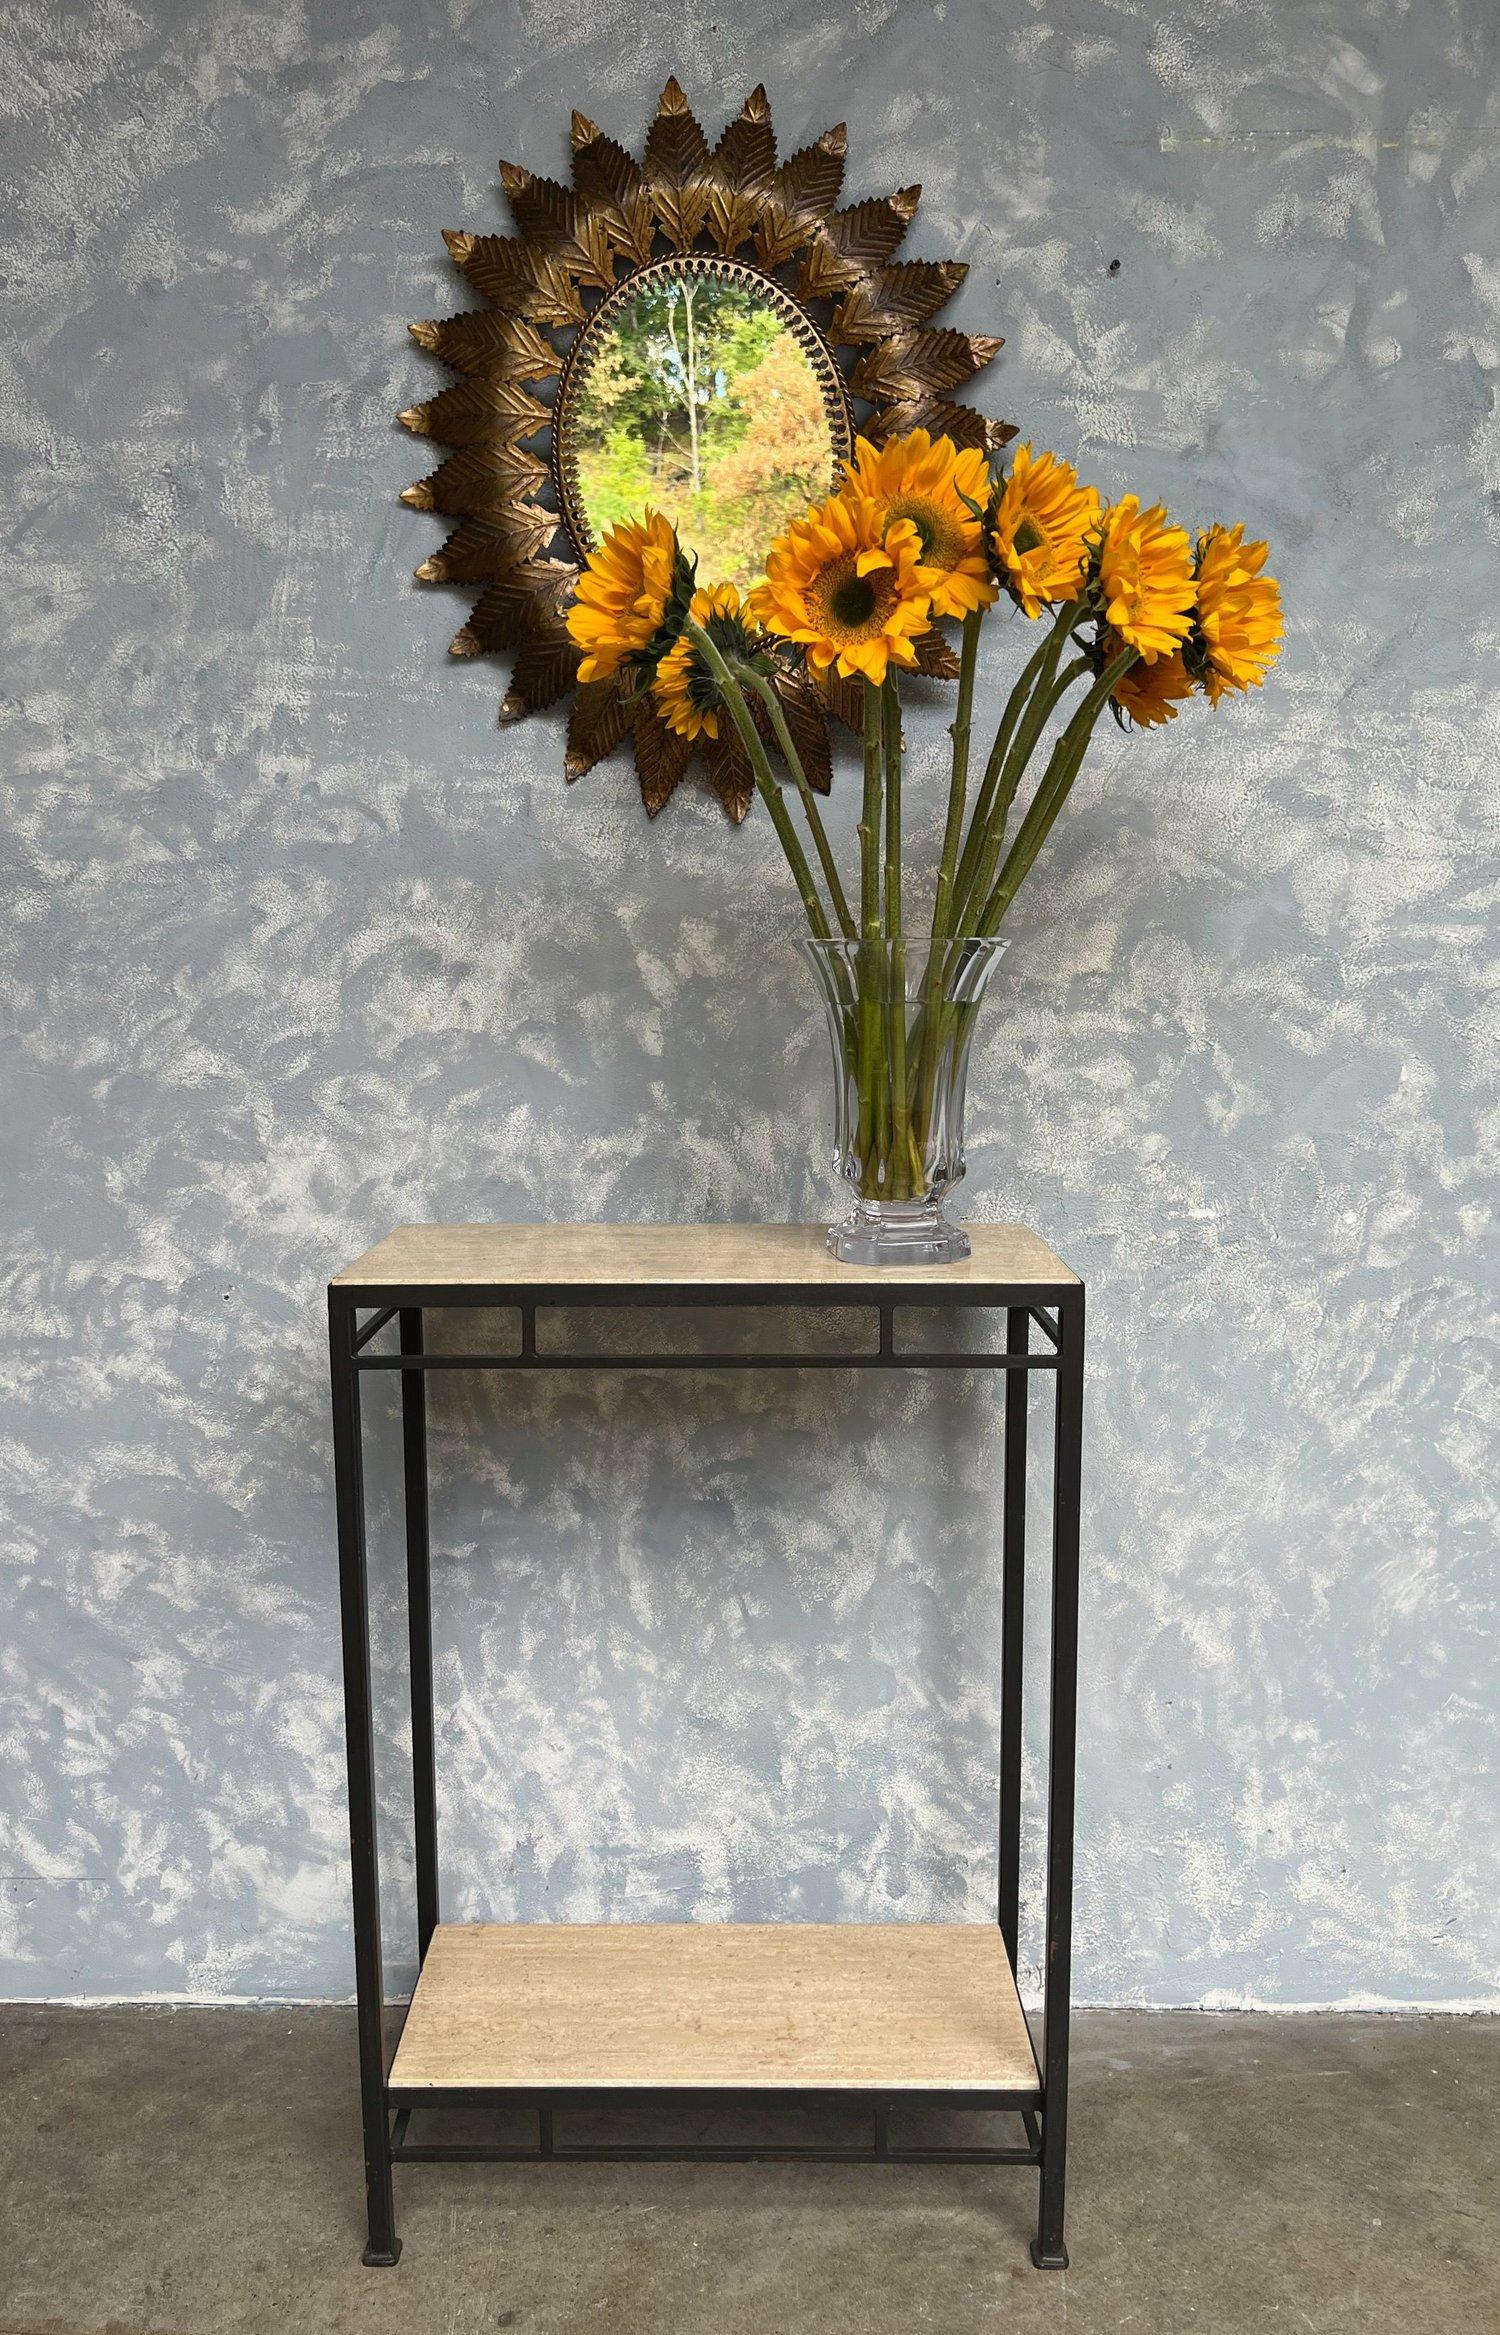 Dieser schöne Spiegel stammt aus Spanien aus den 1950er Jahren und zeigt strahlenförmige Blätter, die einen geflochtenen Rahmen umgeben. Das Ganze ist mit einer reichhaltigen Goldpatina verziert, die die Essenz seiner Zeit einfängt. Um seine